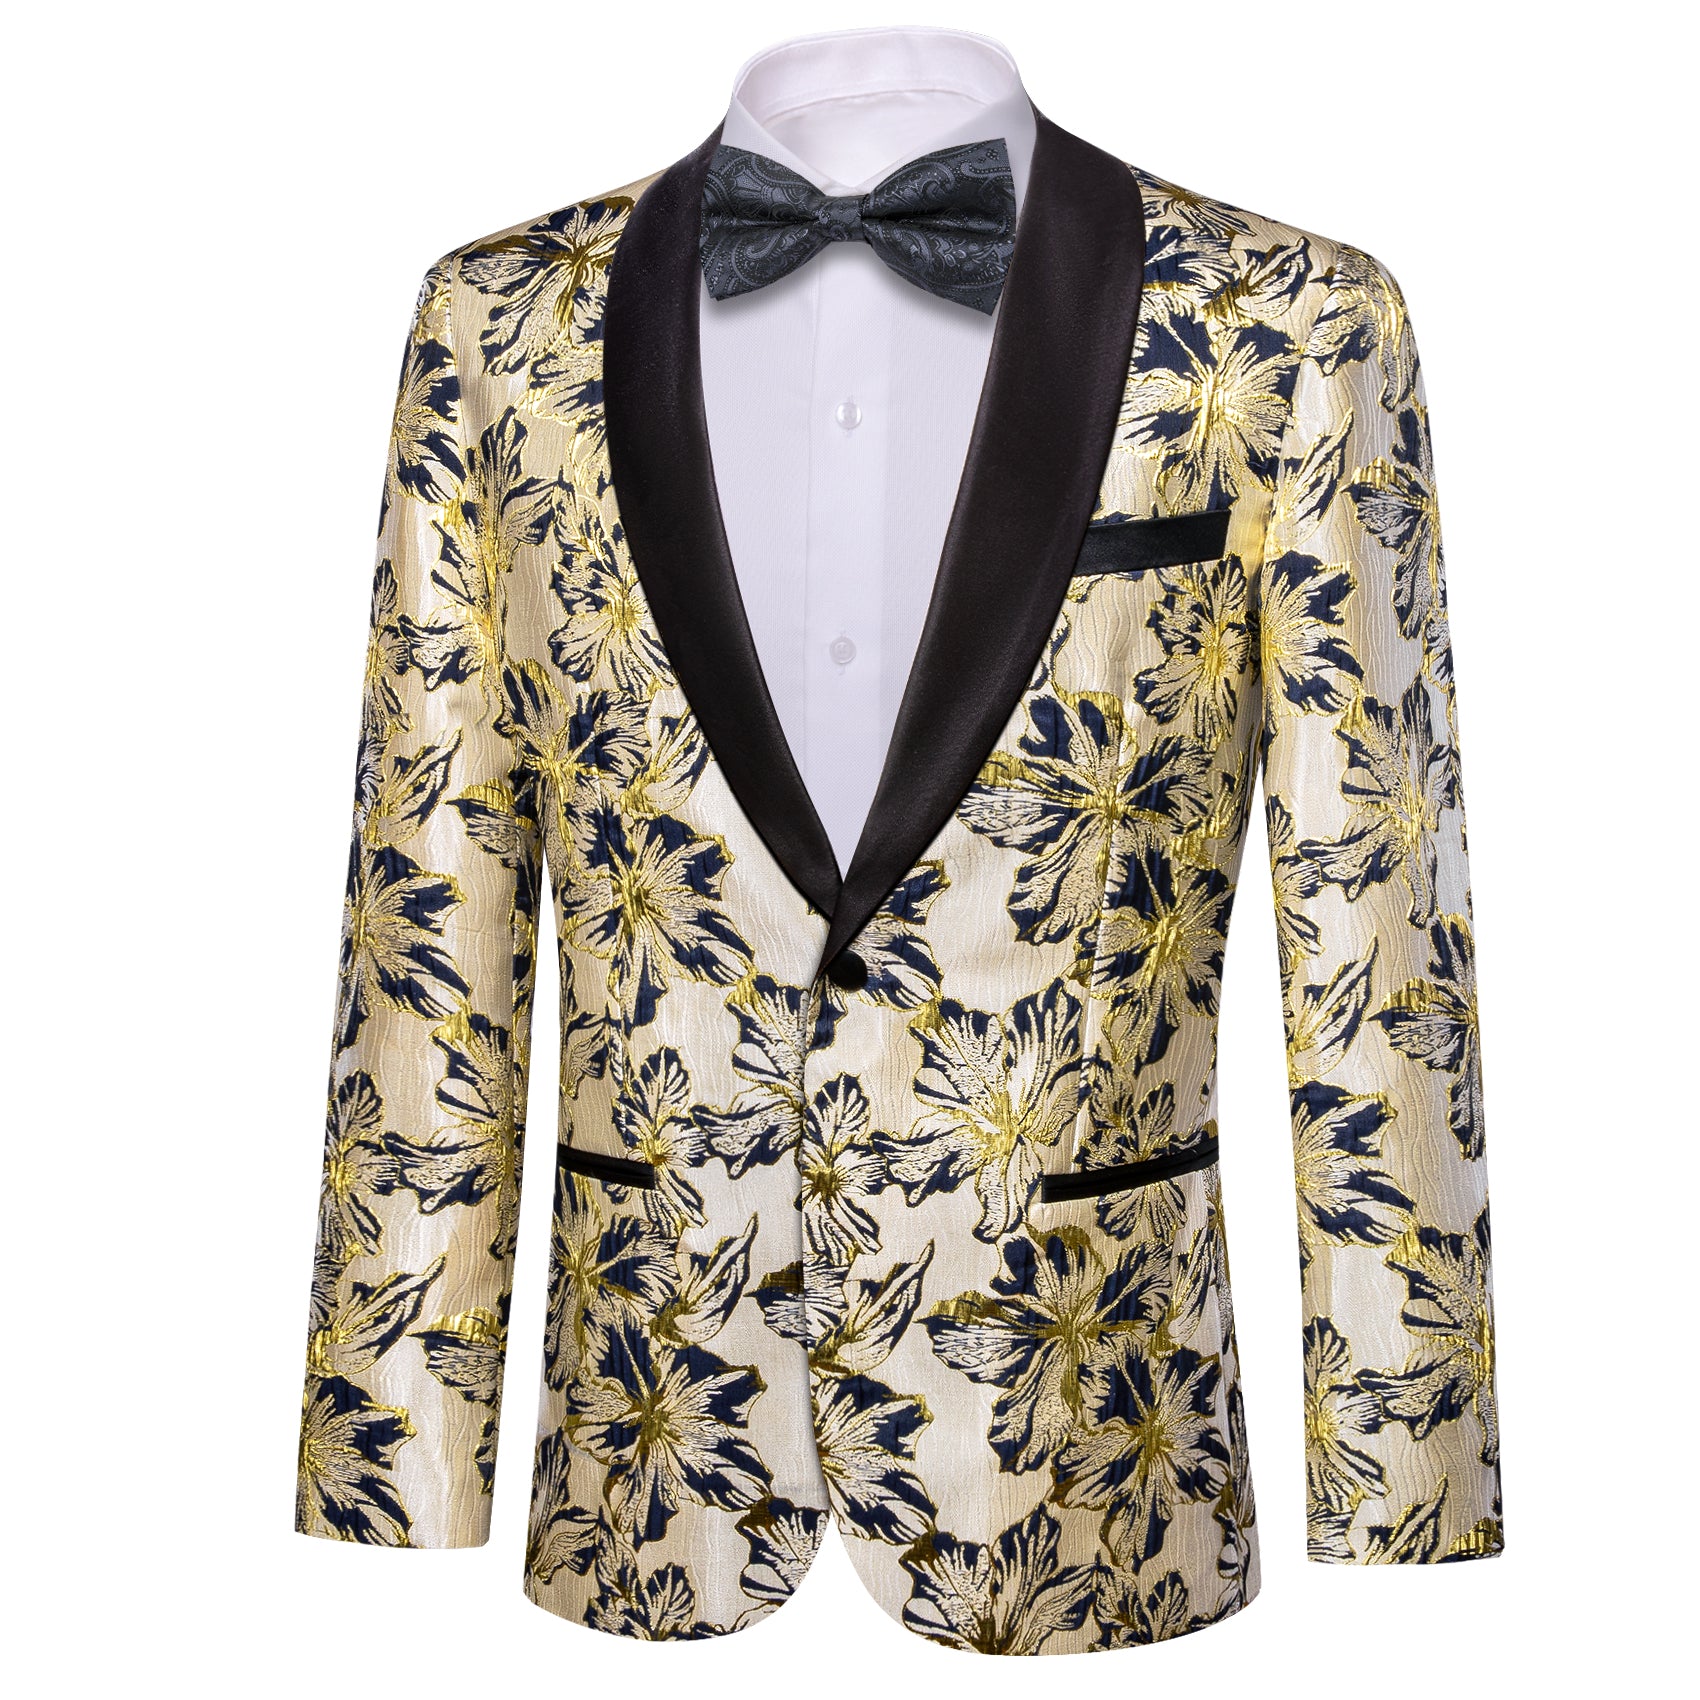 Barry.wang Shawl Collar Suit Black Gold Floral Men's Suit Jacket